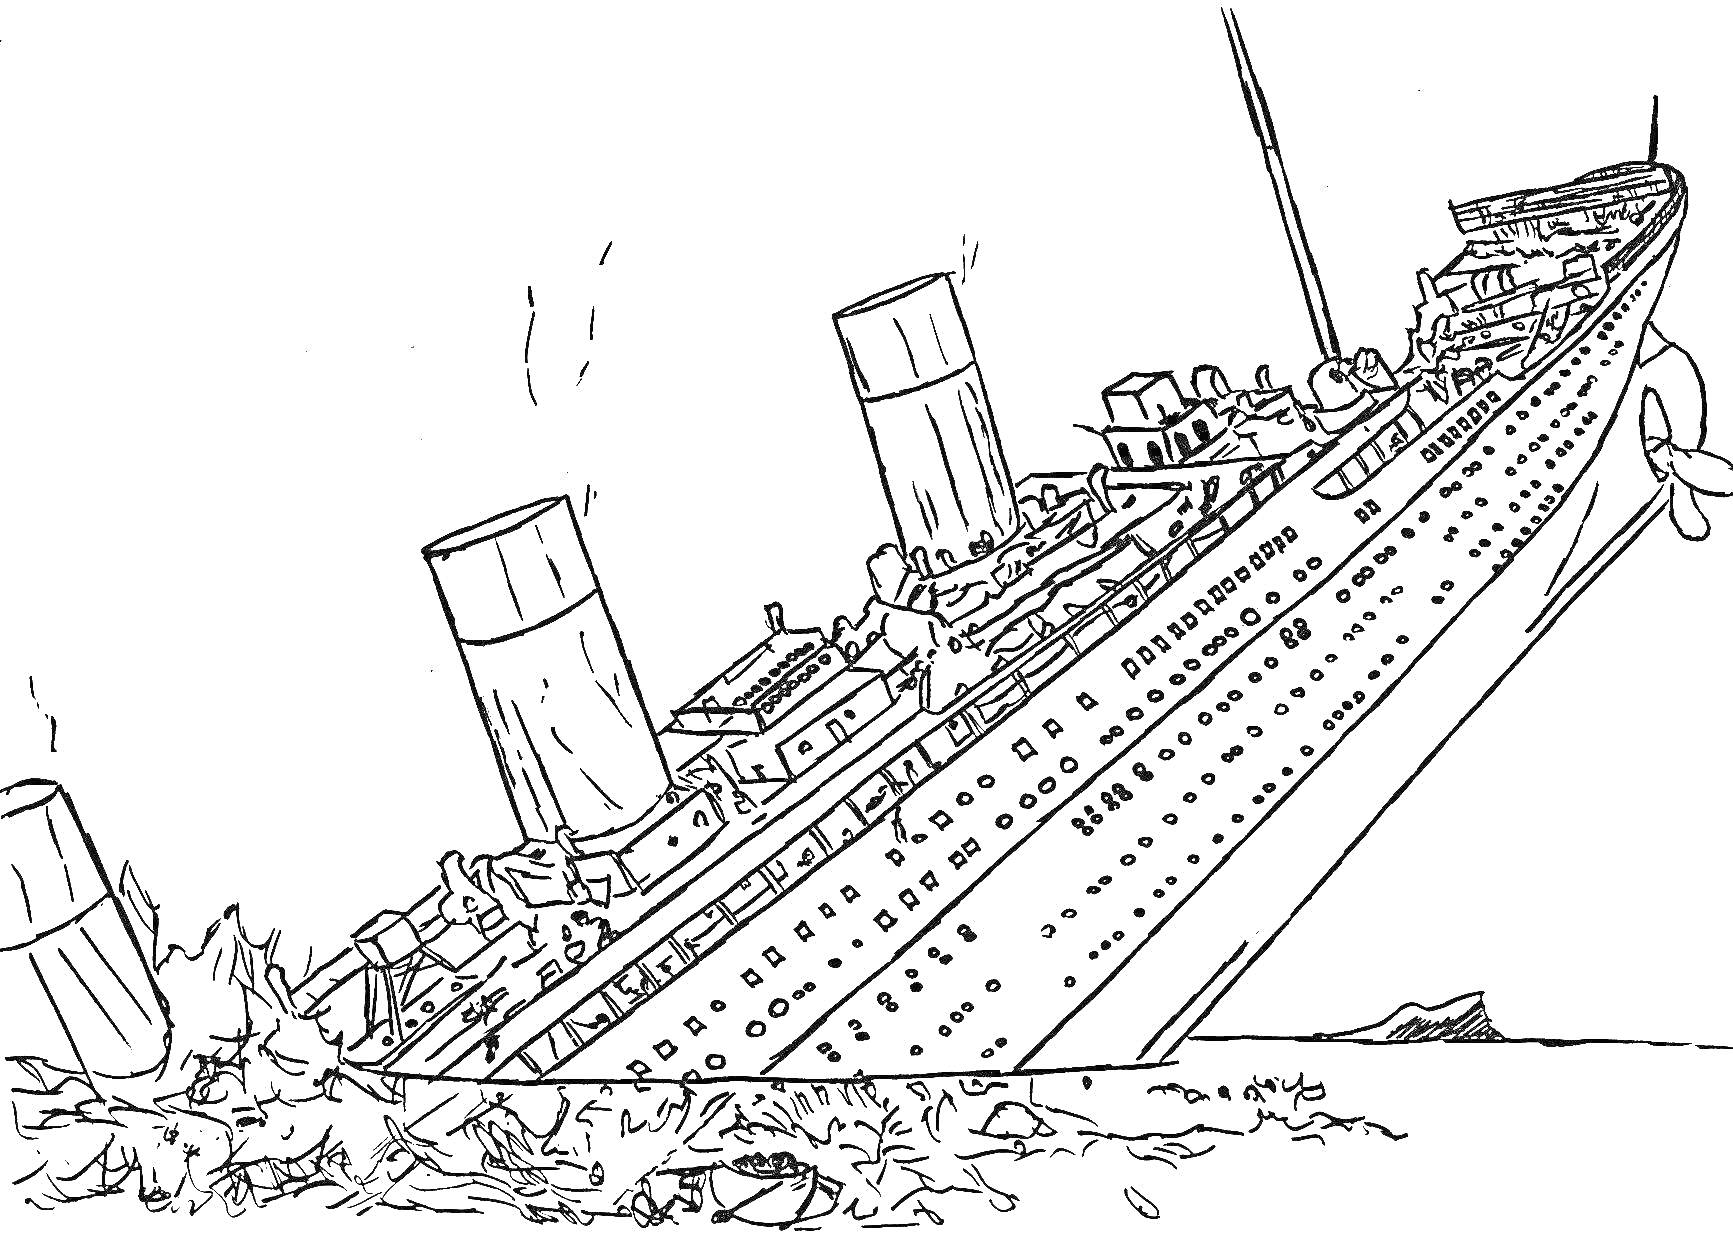 Раскраска Корабль Титаник в момент крушения с наклоном на левый борт, два дымохода, видны части палубы и надстройки, верхушка айсберга